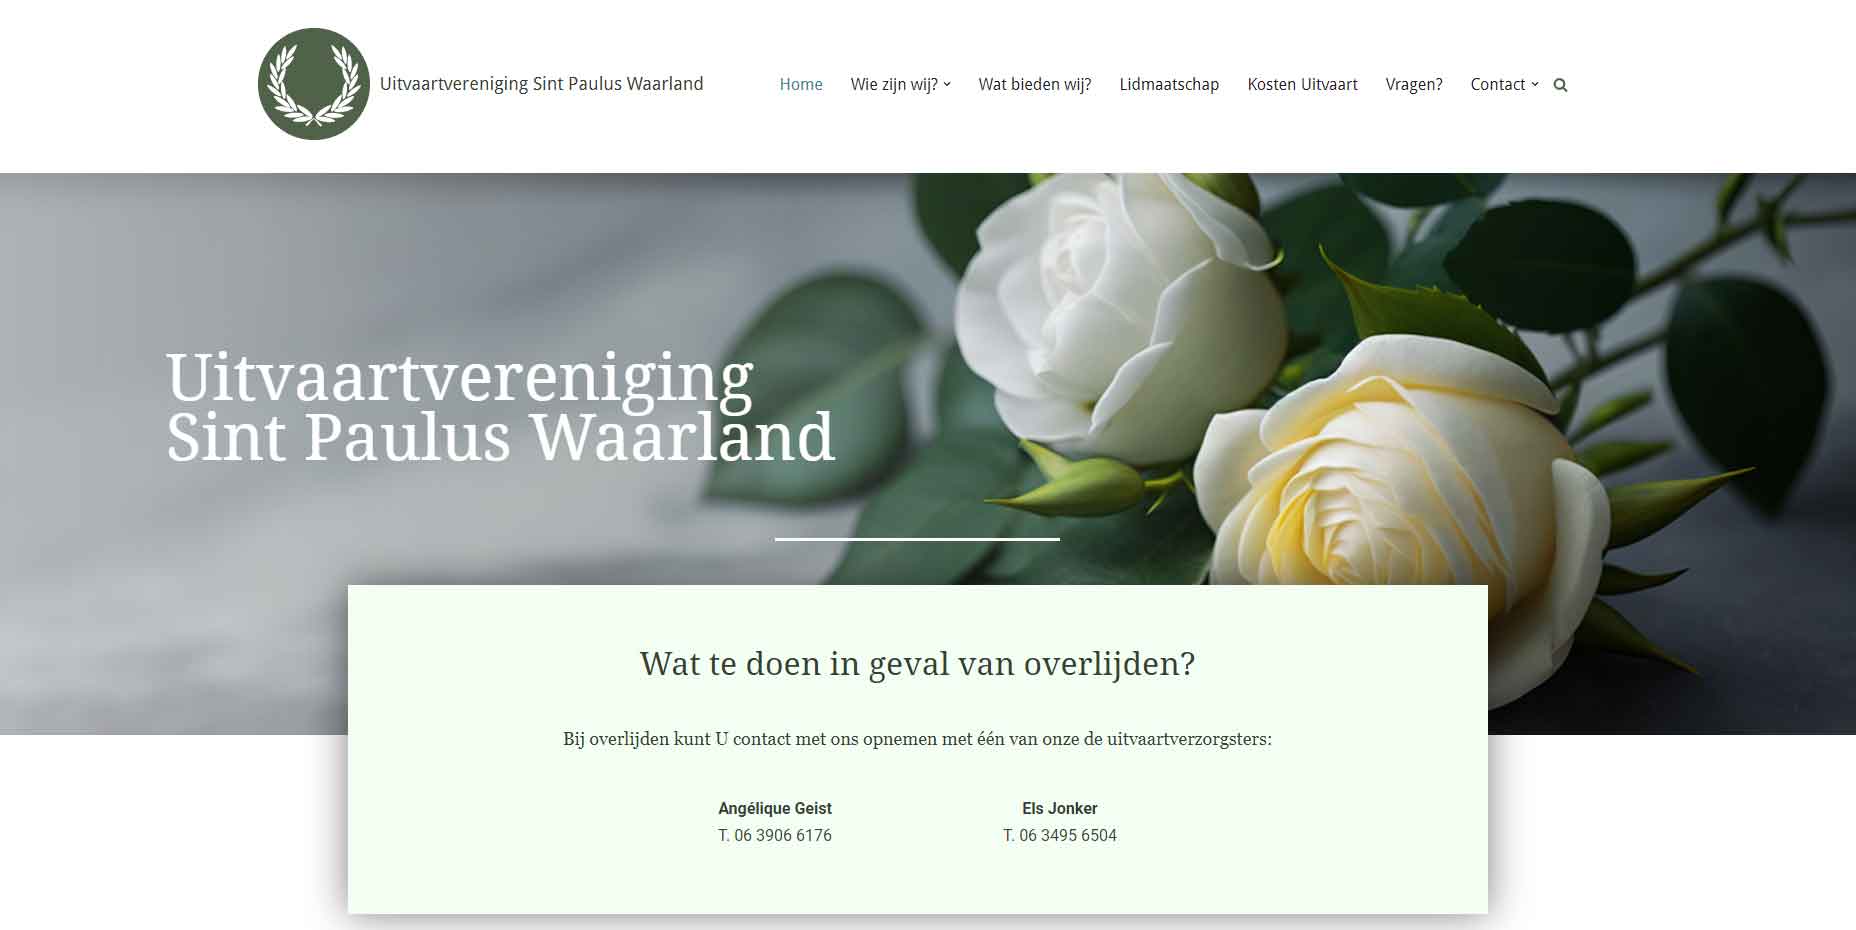 Uitvaartvereniging Sint Paulus Waarland is een website uit de portfolio van GonBa websites